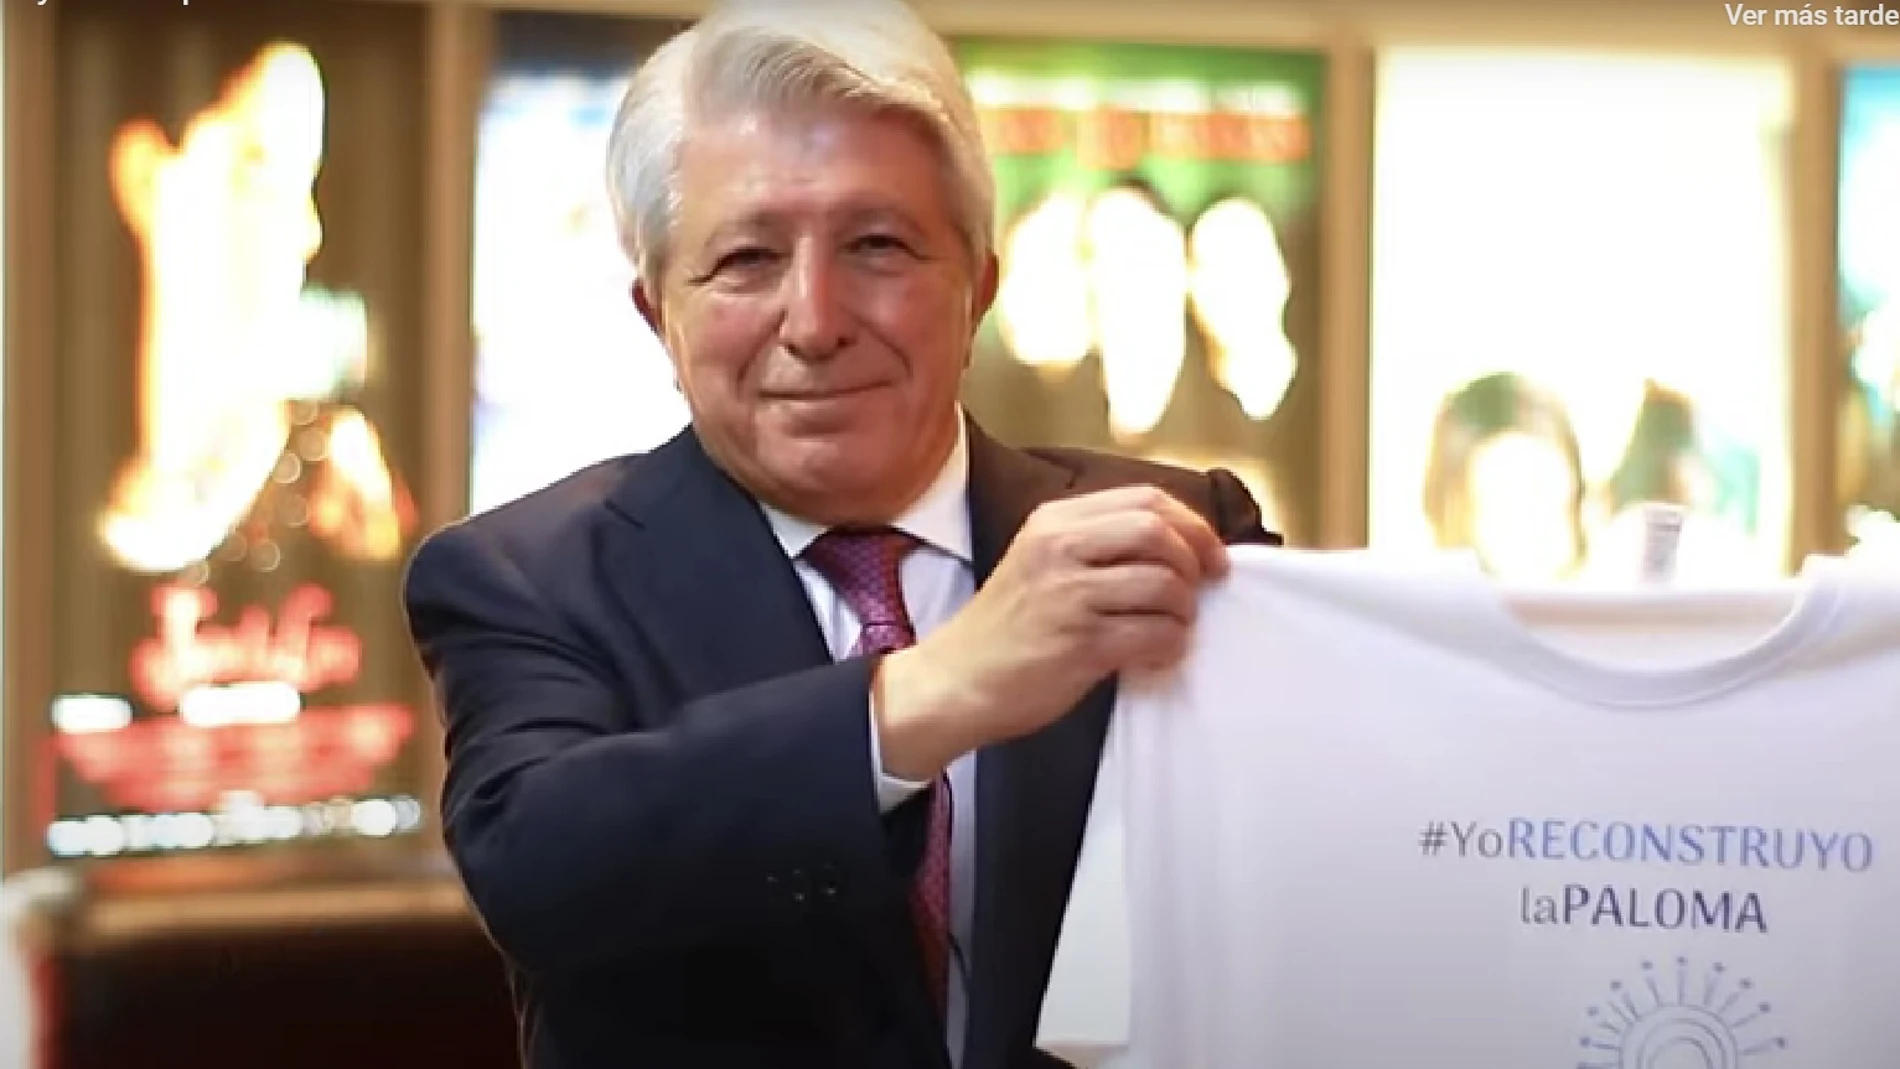 Enrique Cerezo con una camiseta con el lema 'Yo reconstruyo la Paloma'